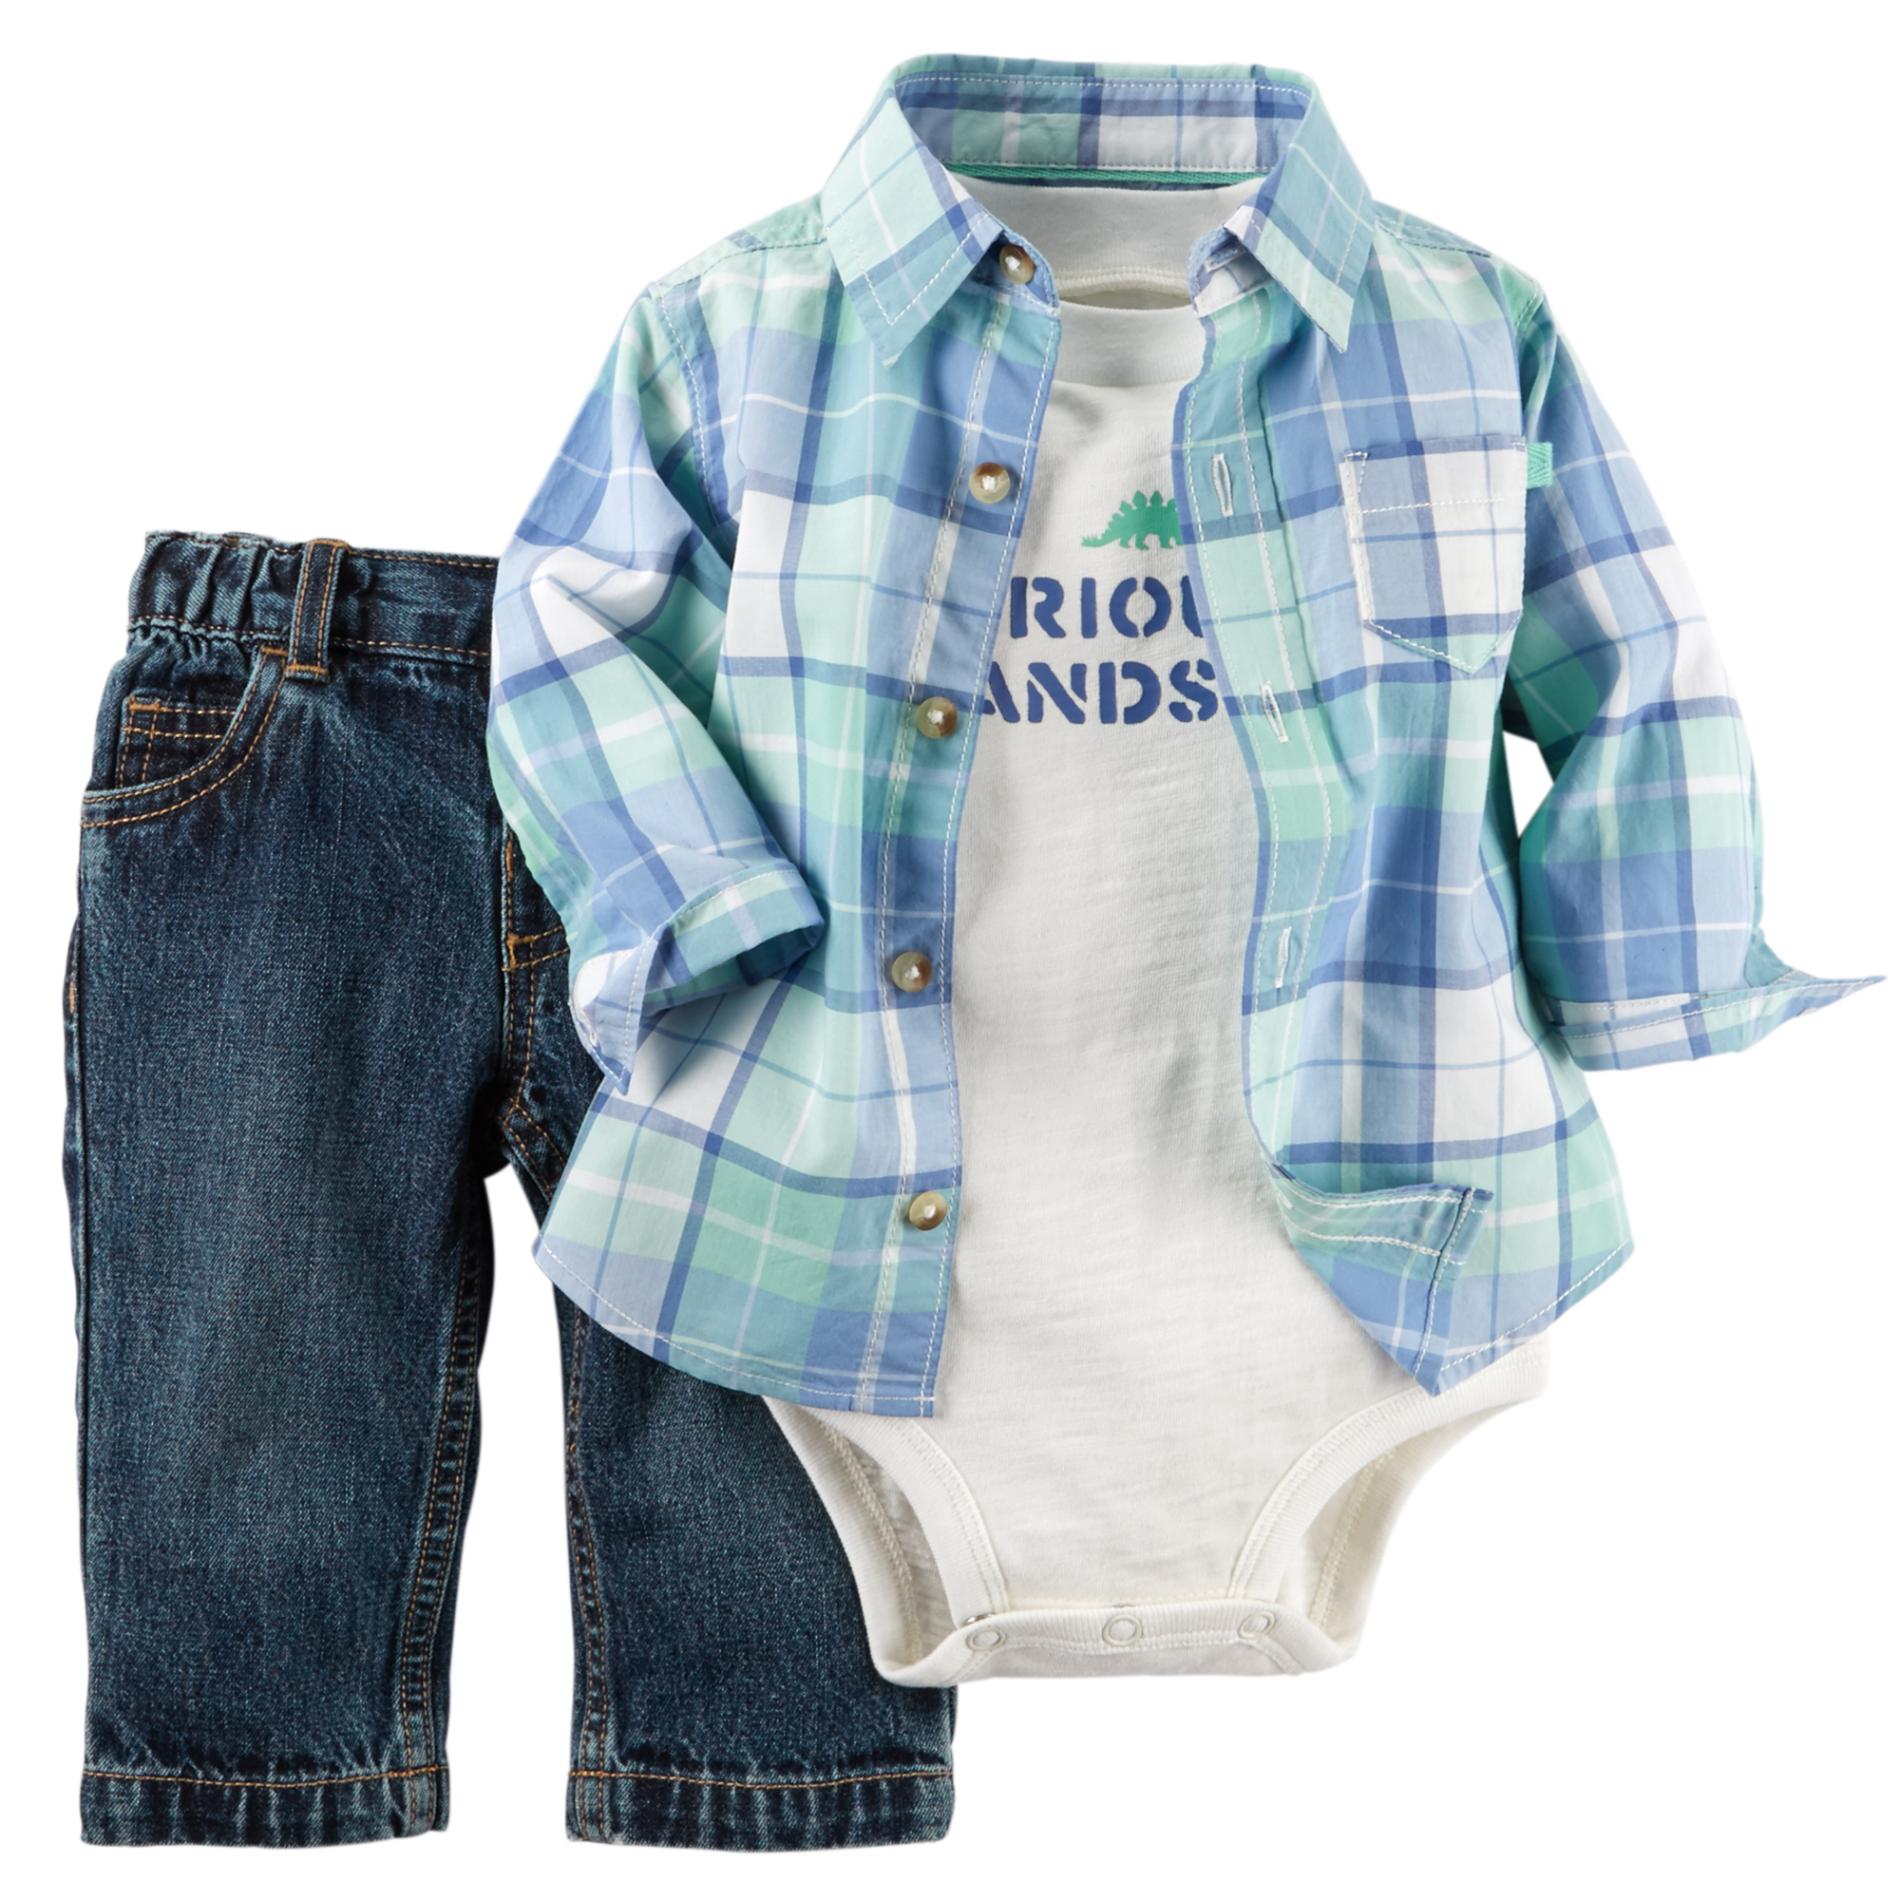 Carter's Newborn & Infant Boy's Bodysuit, Button-Front Shirt & Jeans - Plaid